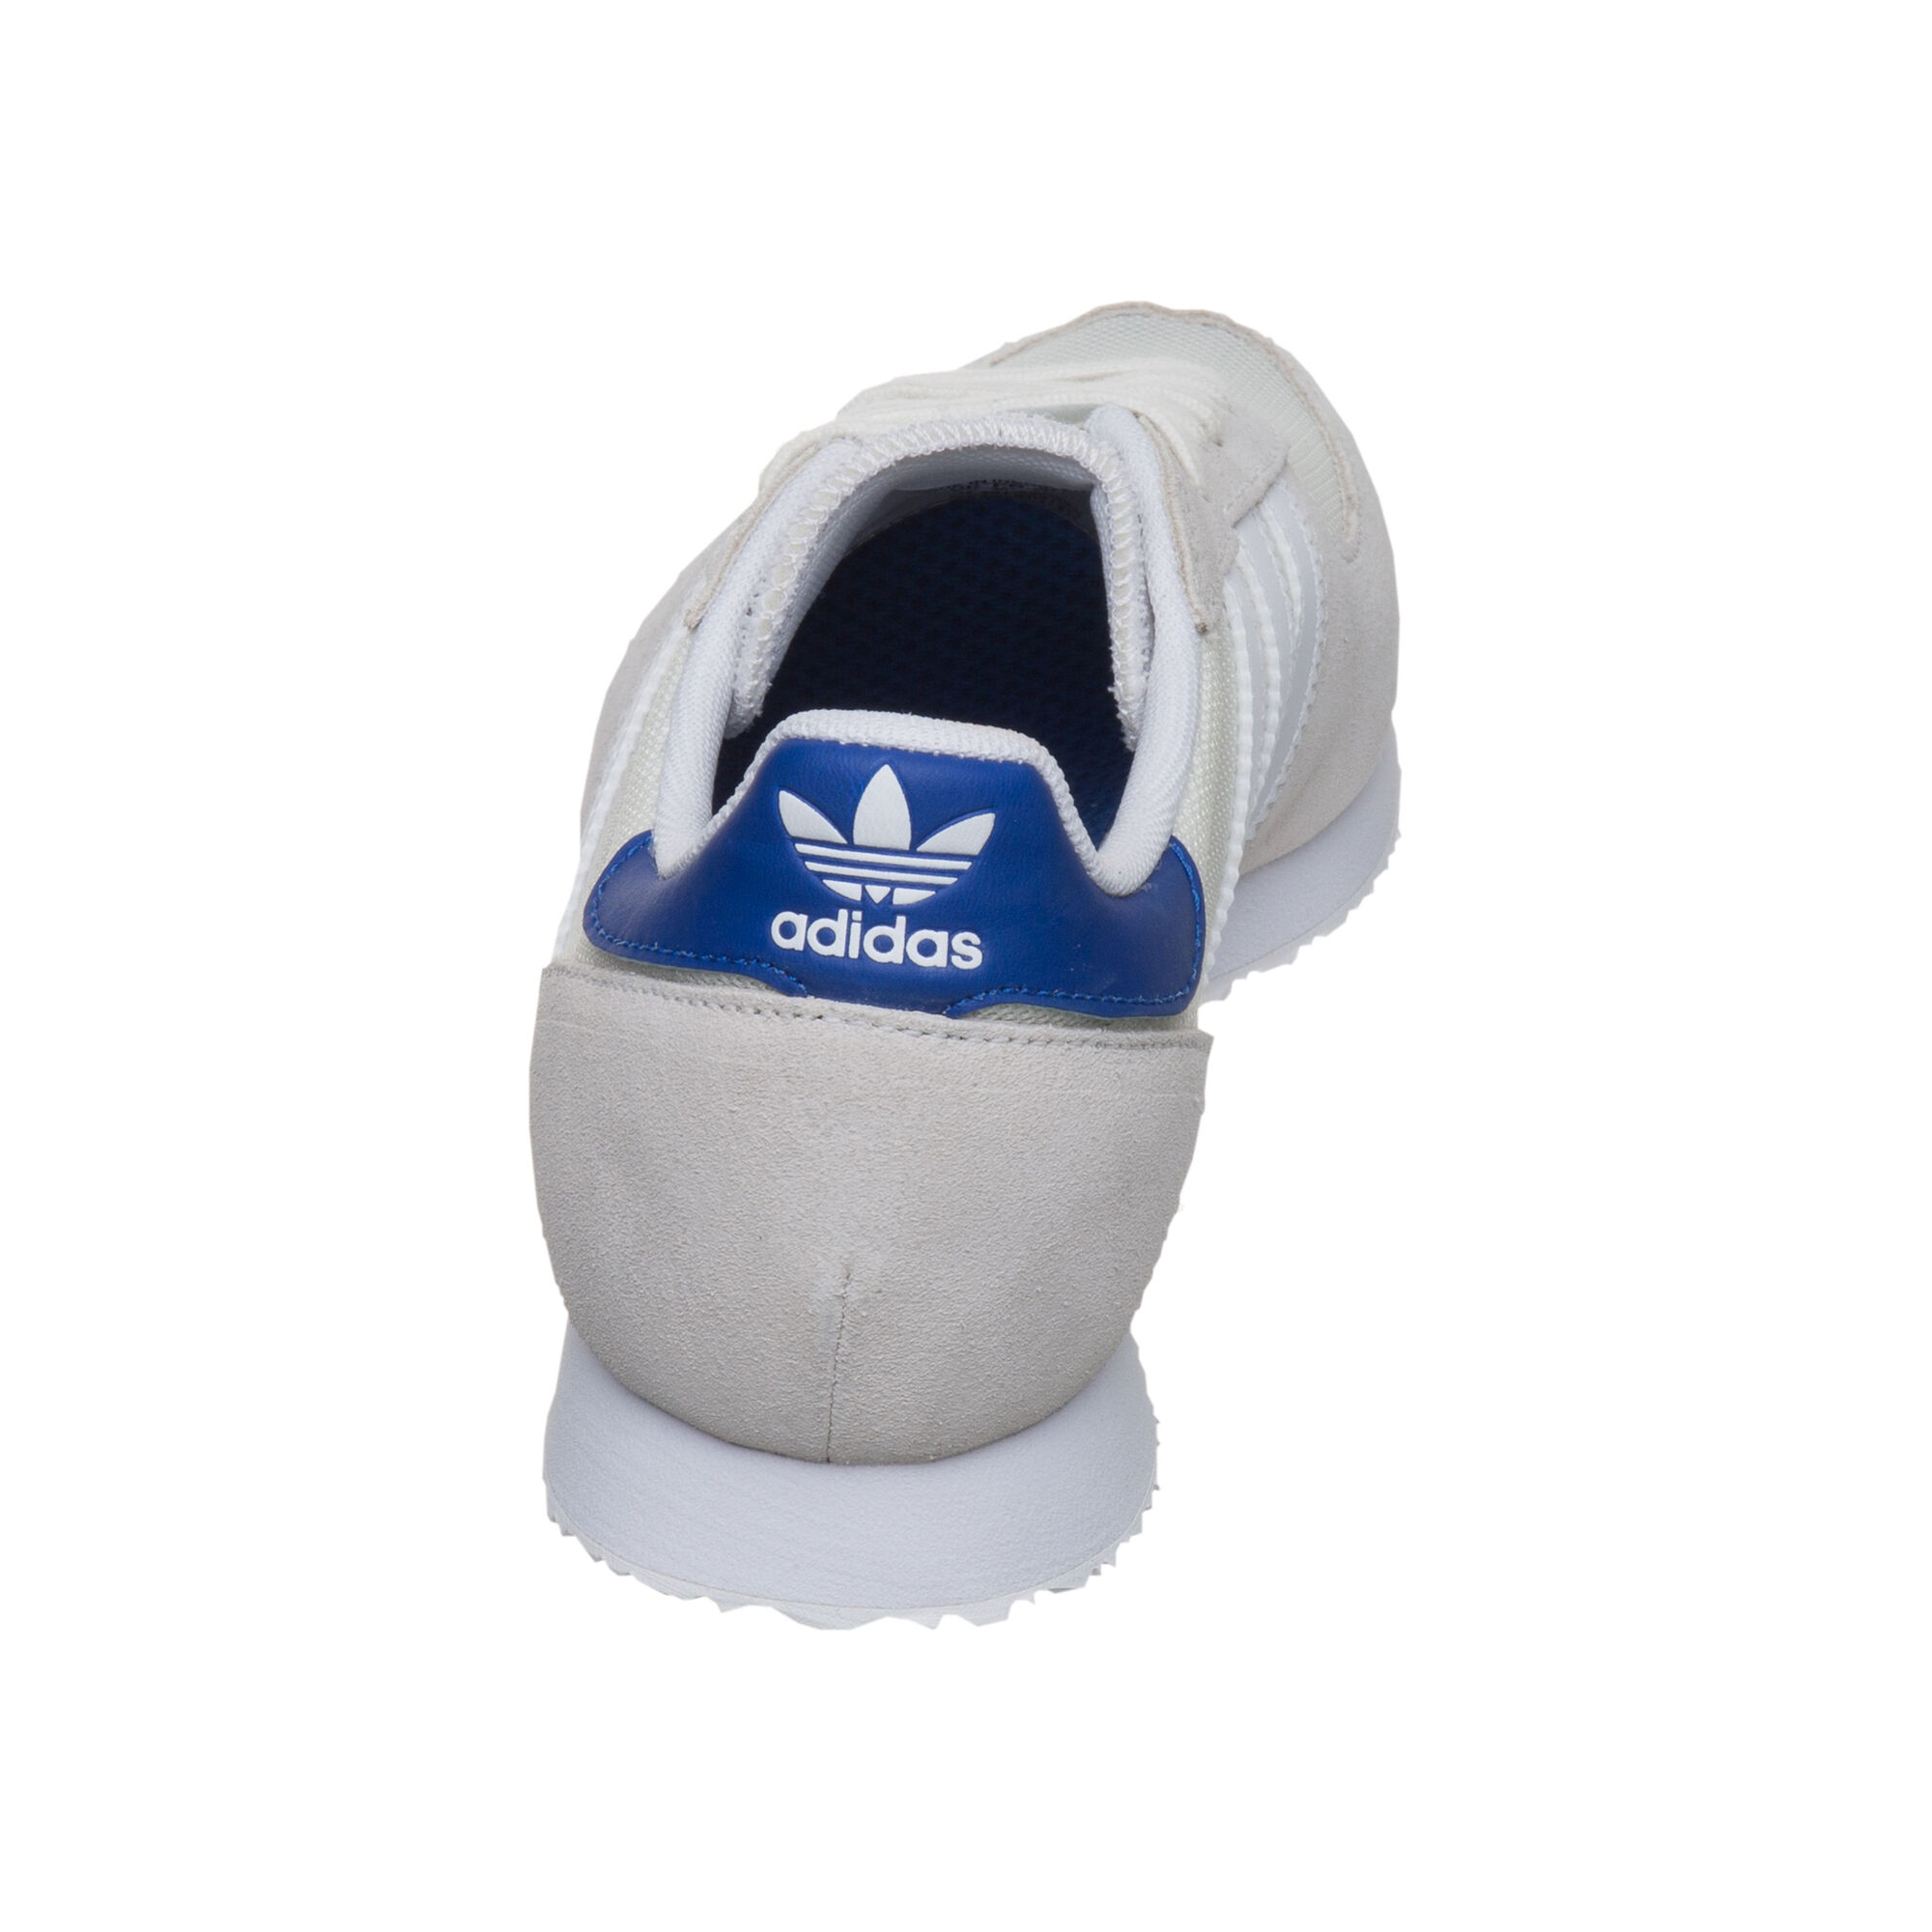 adidas Racer Sneaker Damen - Weiß, Dunkelblau online kaufen | Point